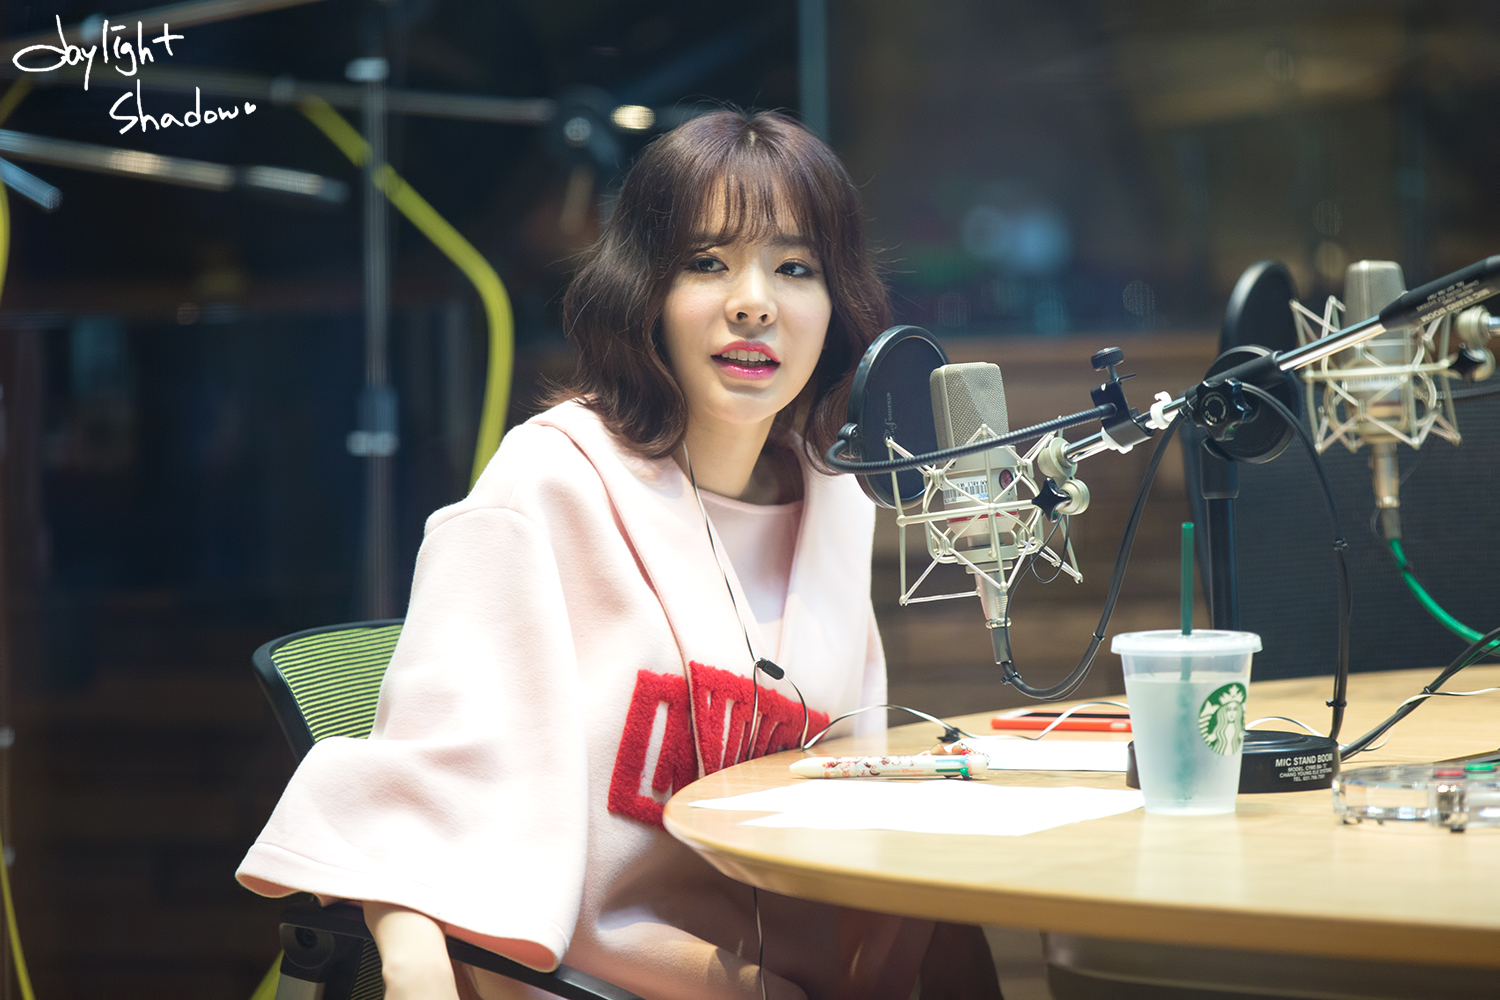 [OTHER][06-02-2015]Hình ảnh mới nhất từ DJ Sunny tại Radio MBC FM4U - "FM Date" - Page 31 2354B64A566DD0BE2DA2D3